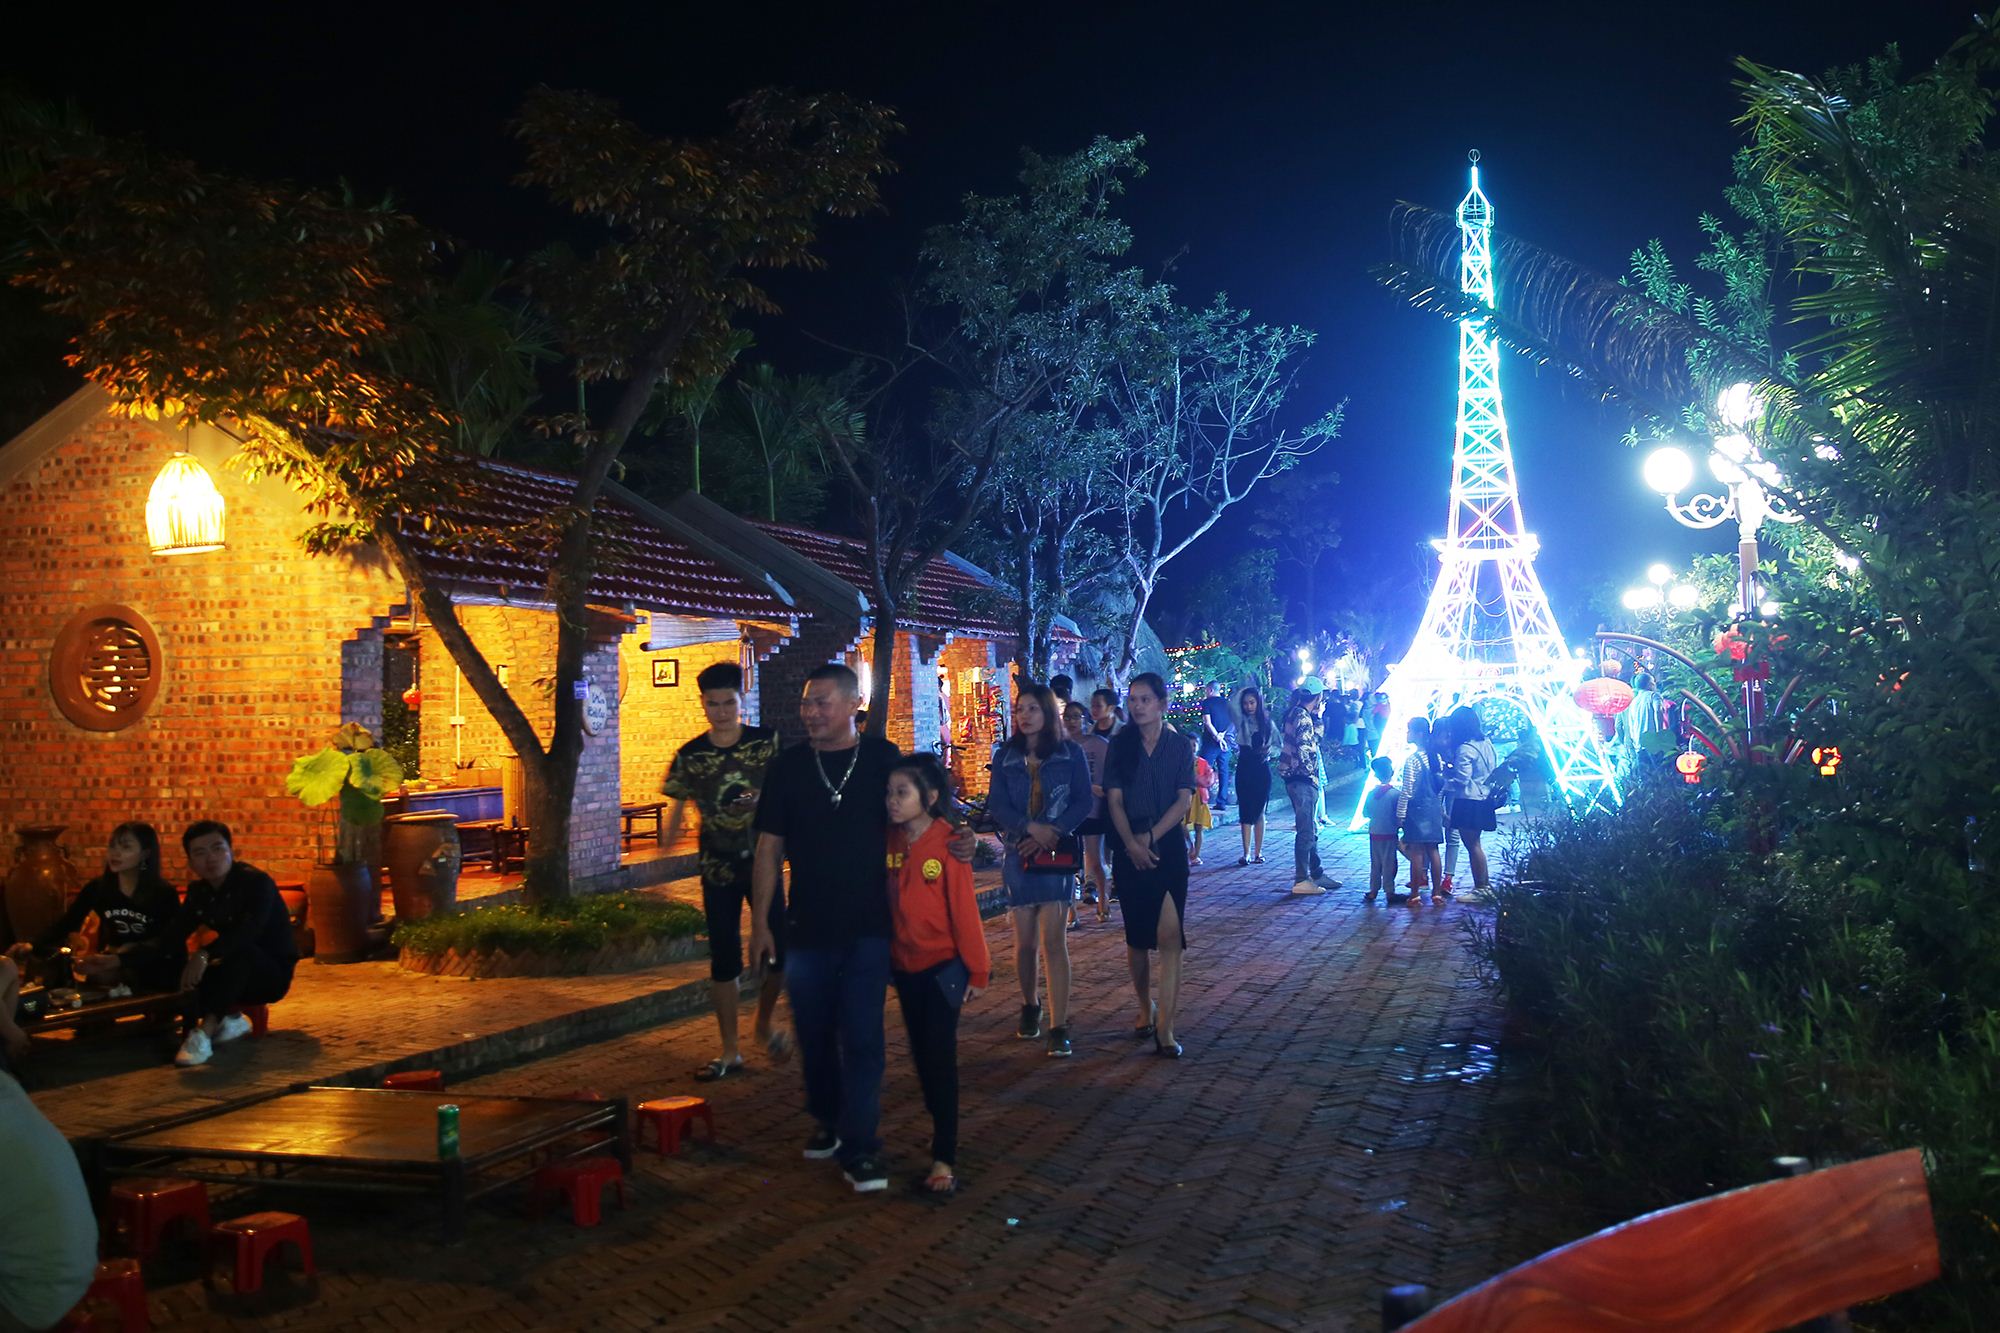 Nằm trong không gian làng quê Việt, các mô hình như tháp Eiffel, hay núi Phú Sỹ được trang hoàng bằng hàng ngàn bóng đèn nhiều màu sắc.